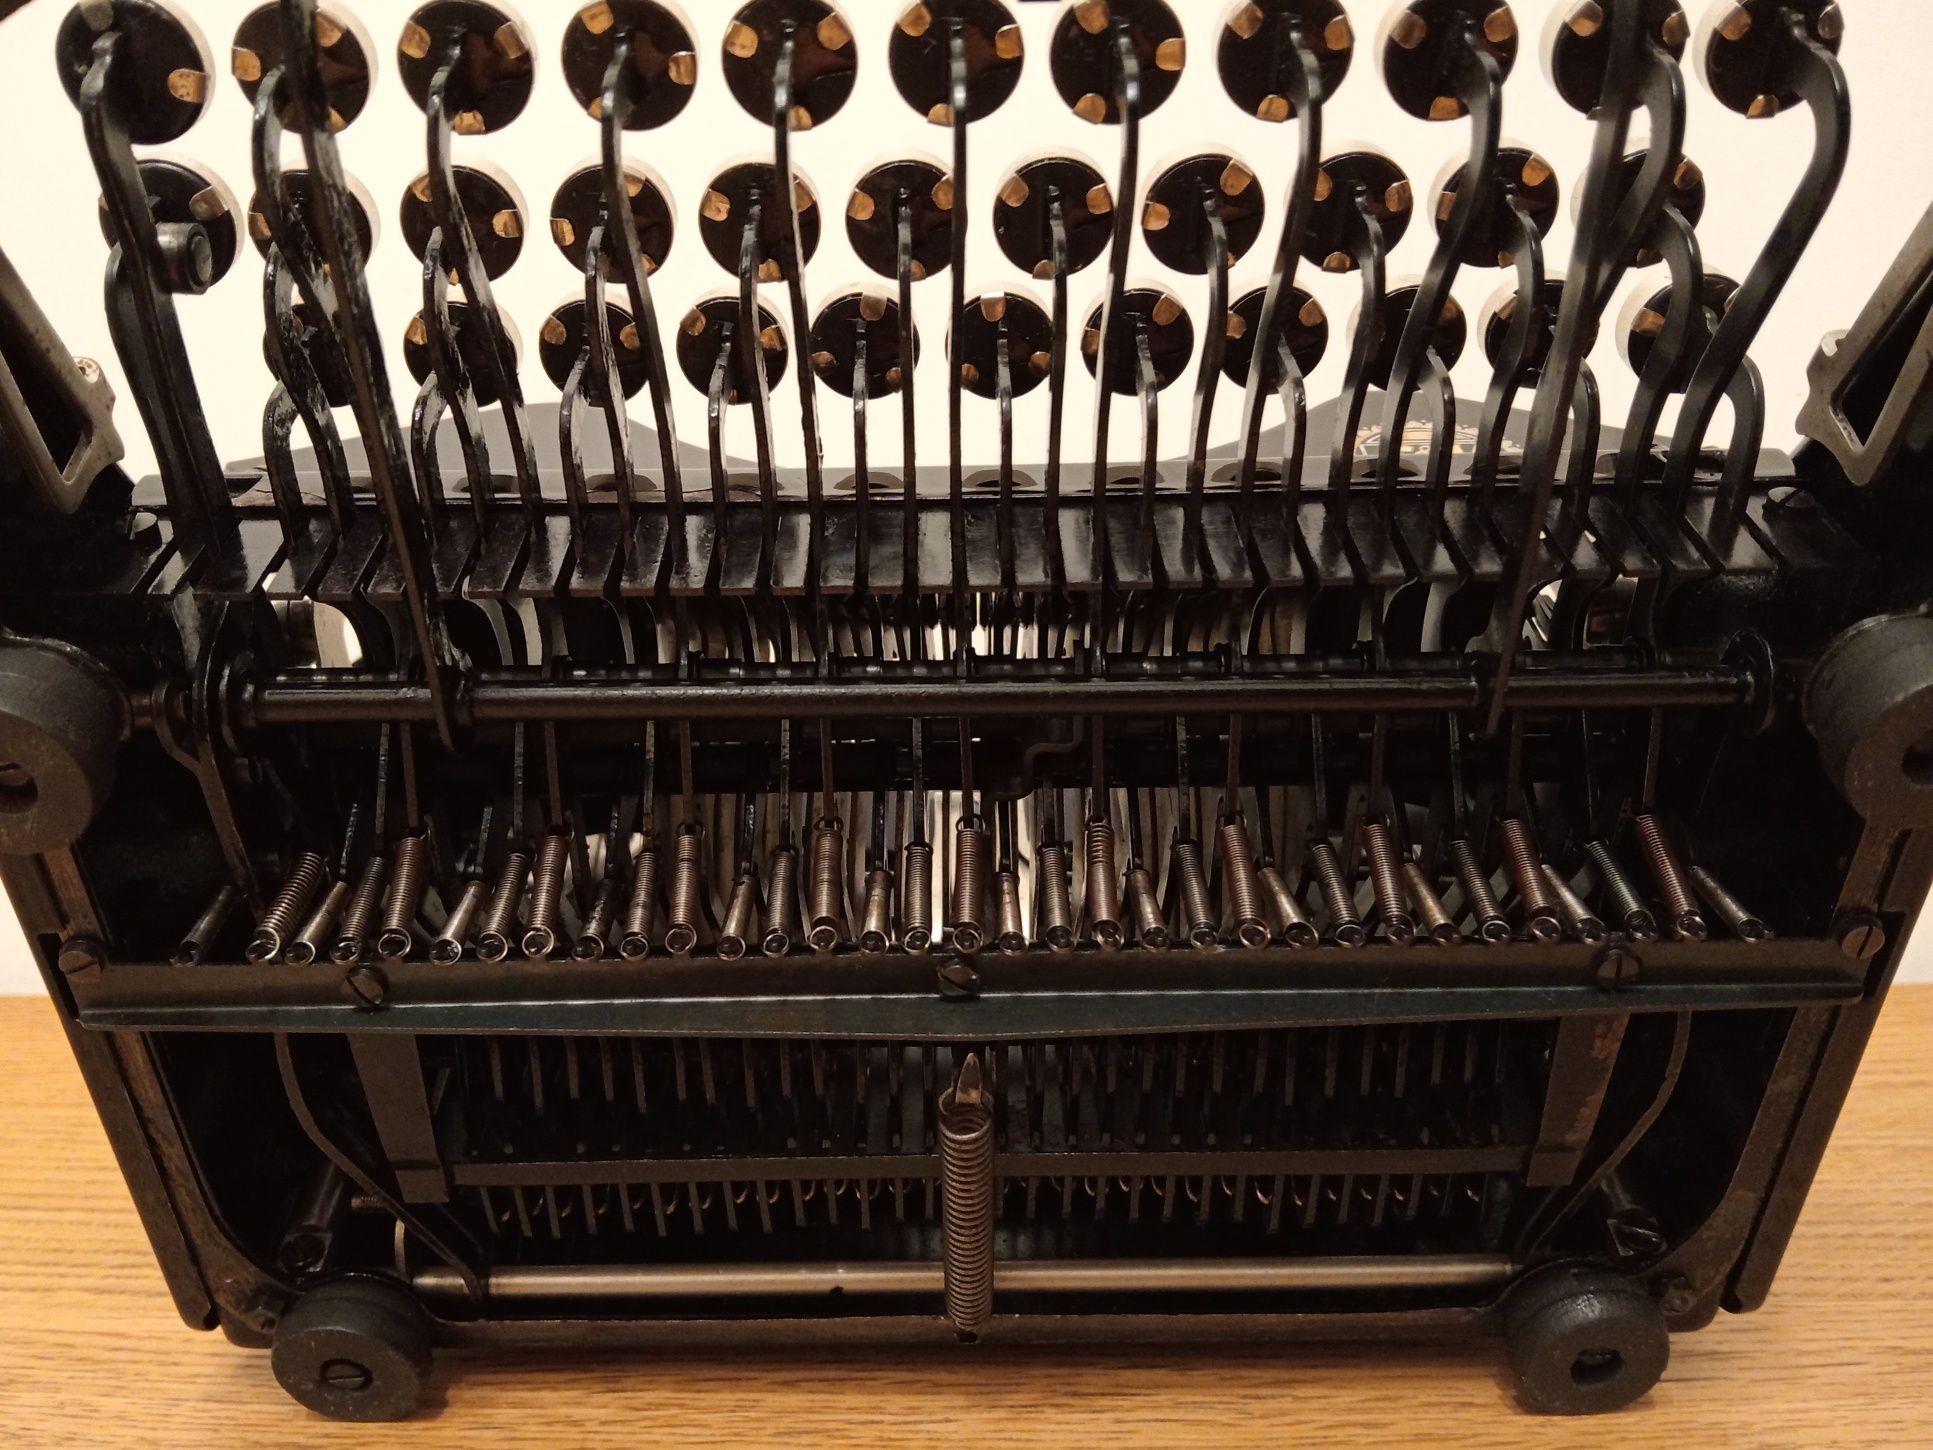 1928 Erika 4 przedwojenna maszyna do pisania, sprawna, polska czcionka